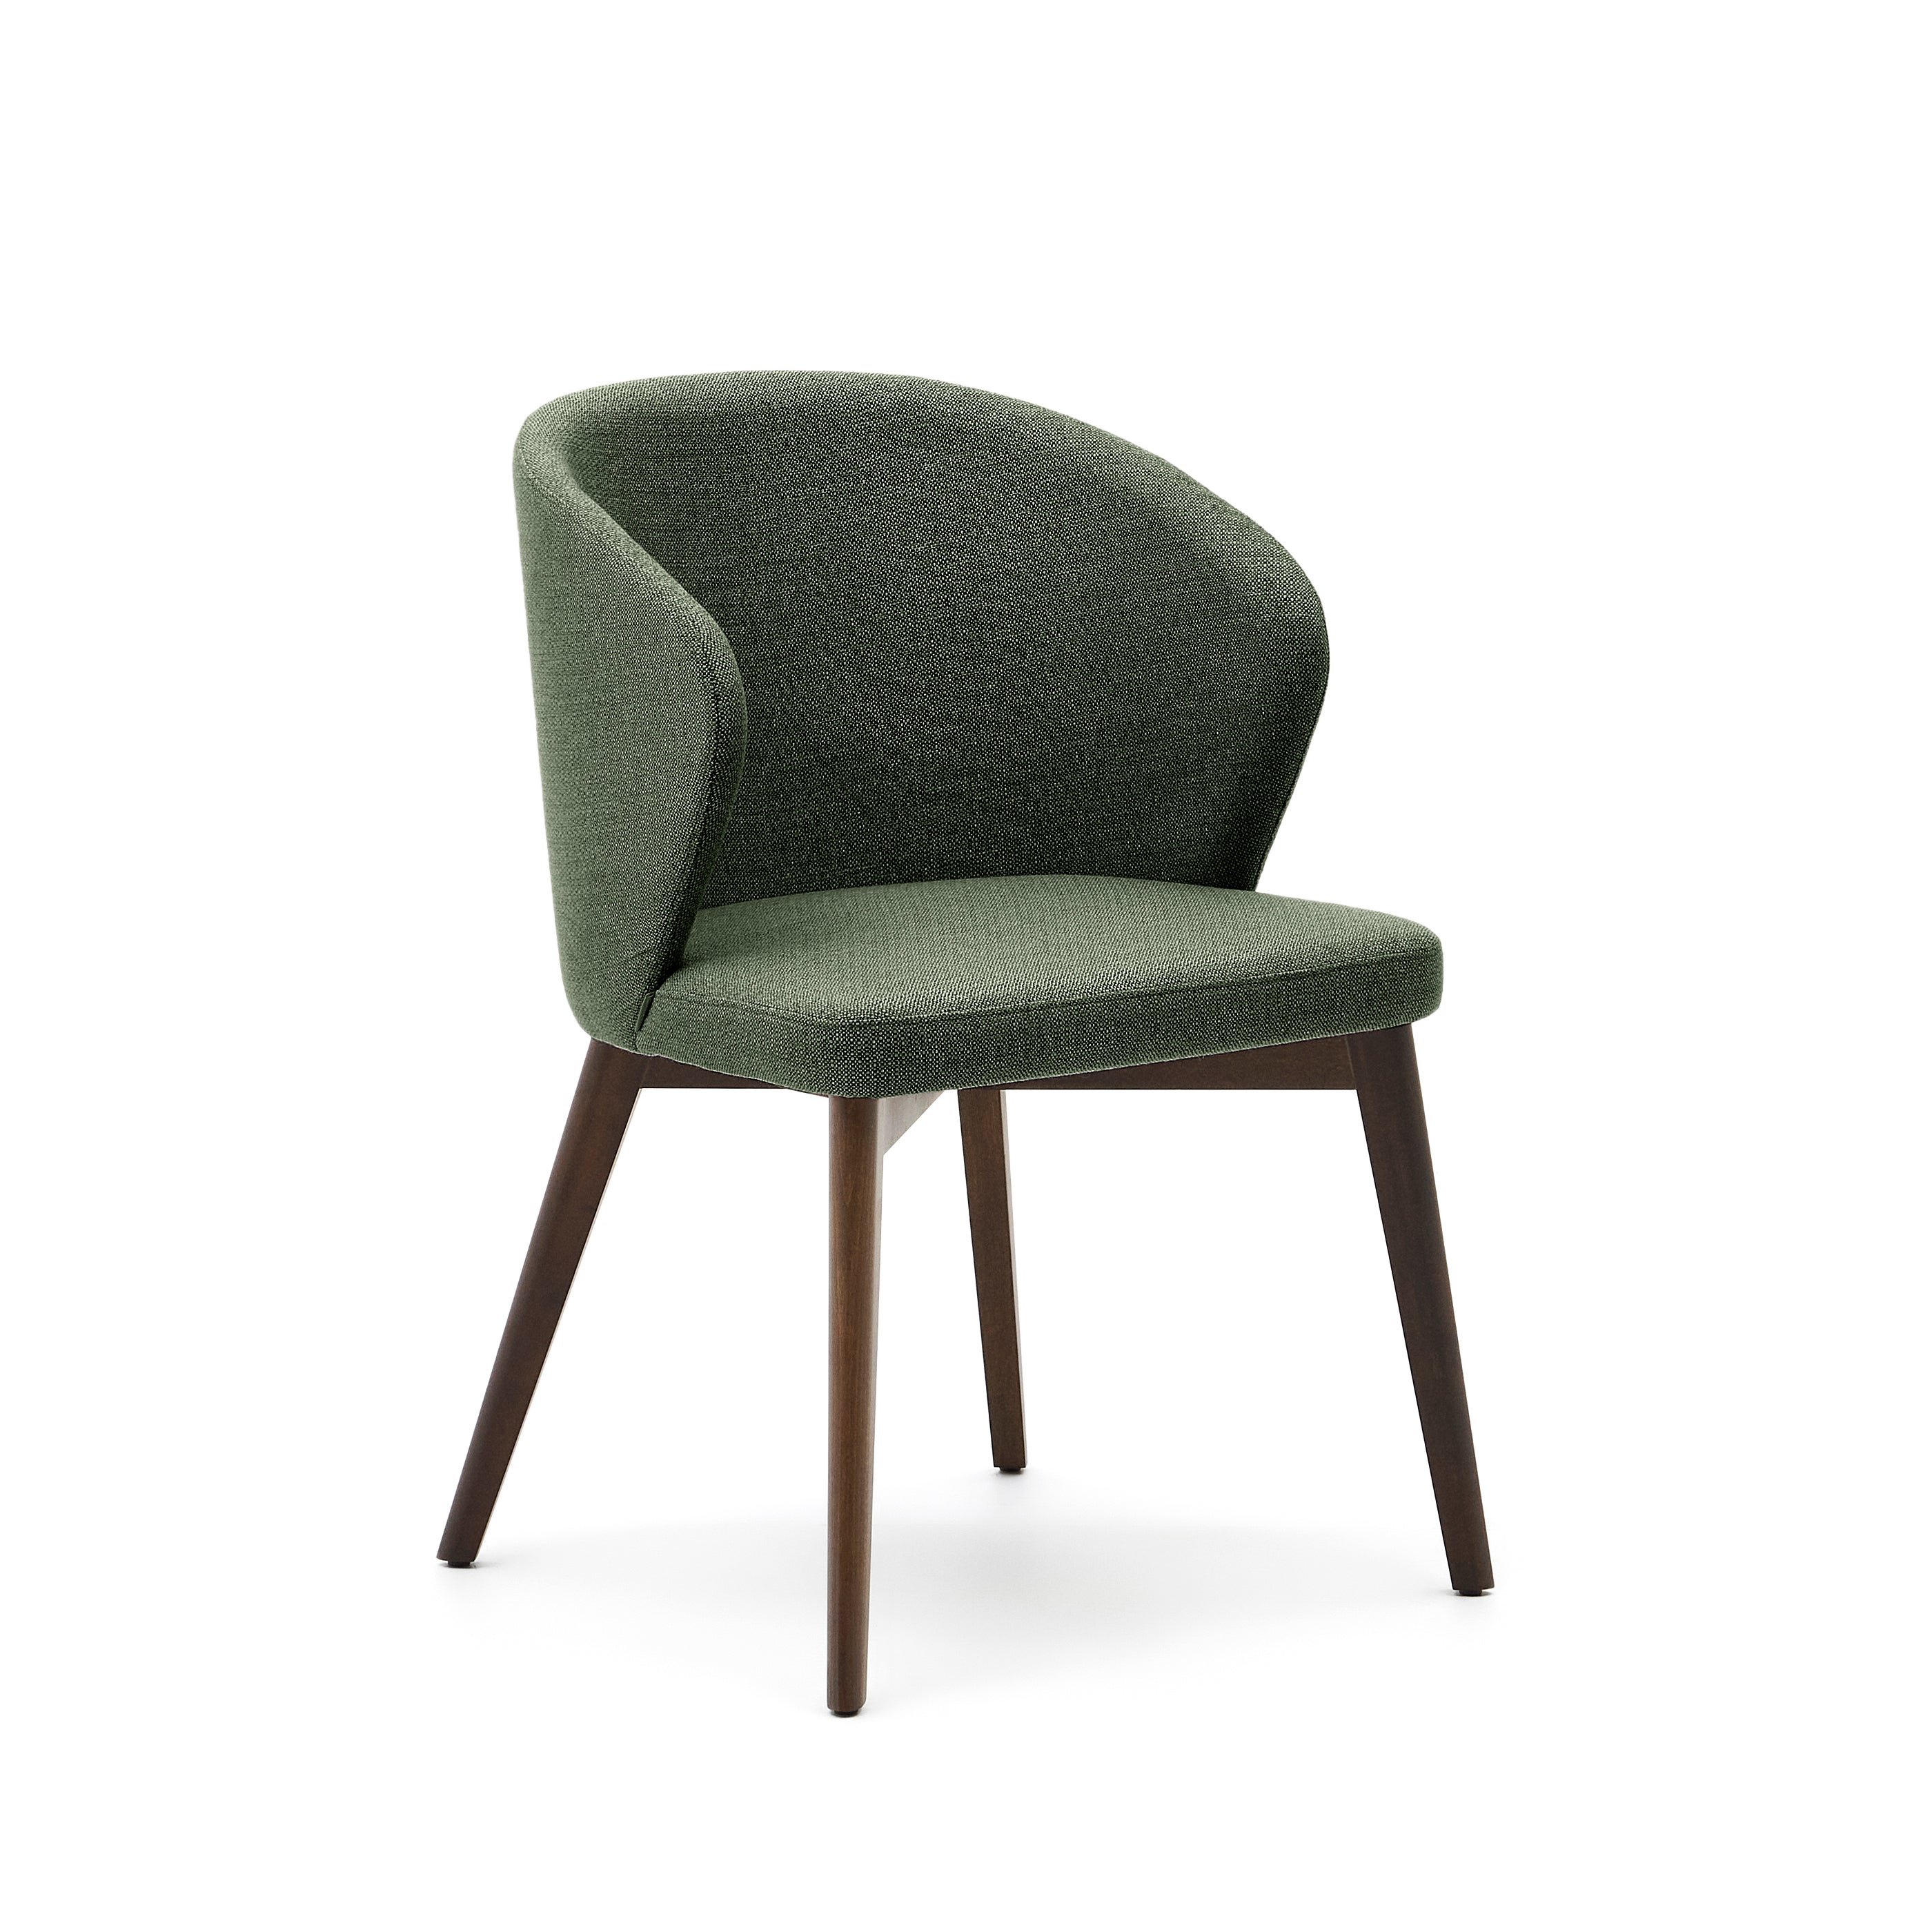 Darice szék zöld kárpittal és 100% FSC minősített szilárd bükkfából dió befejezéssel